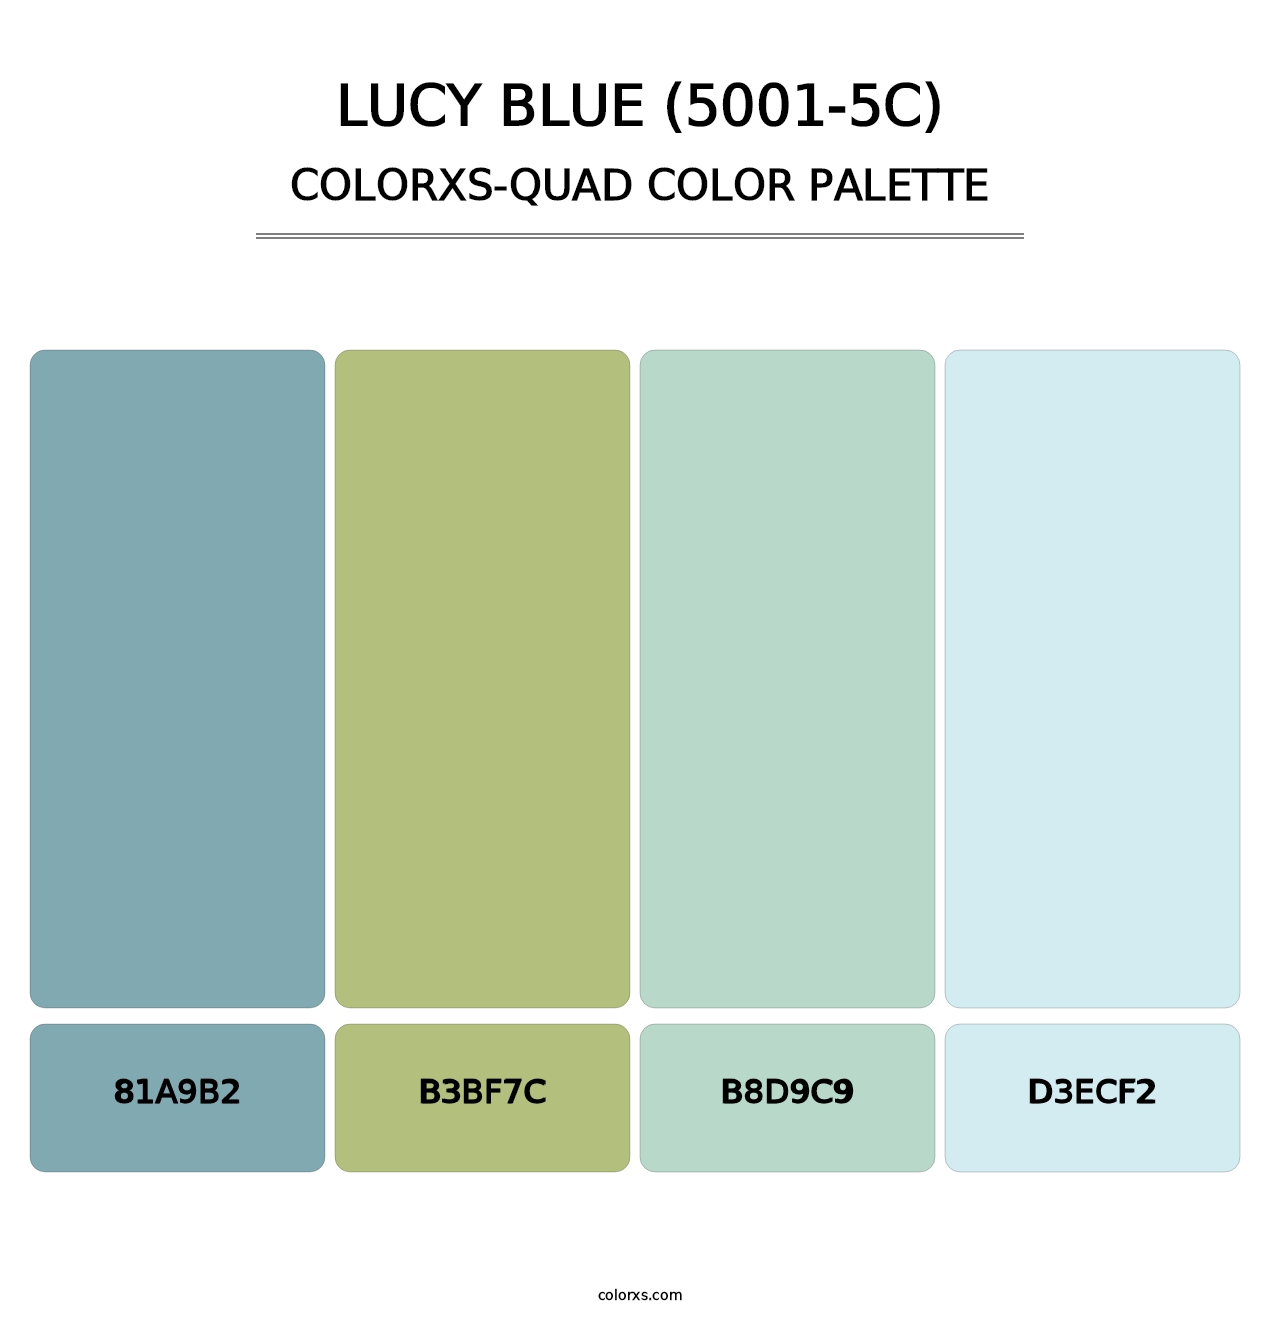 Lucy Blue (5001-5C) - Colorxs Quad Palette